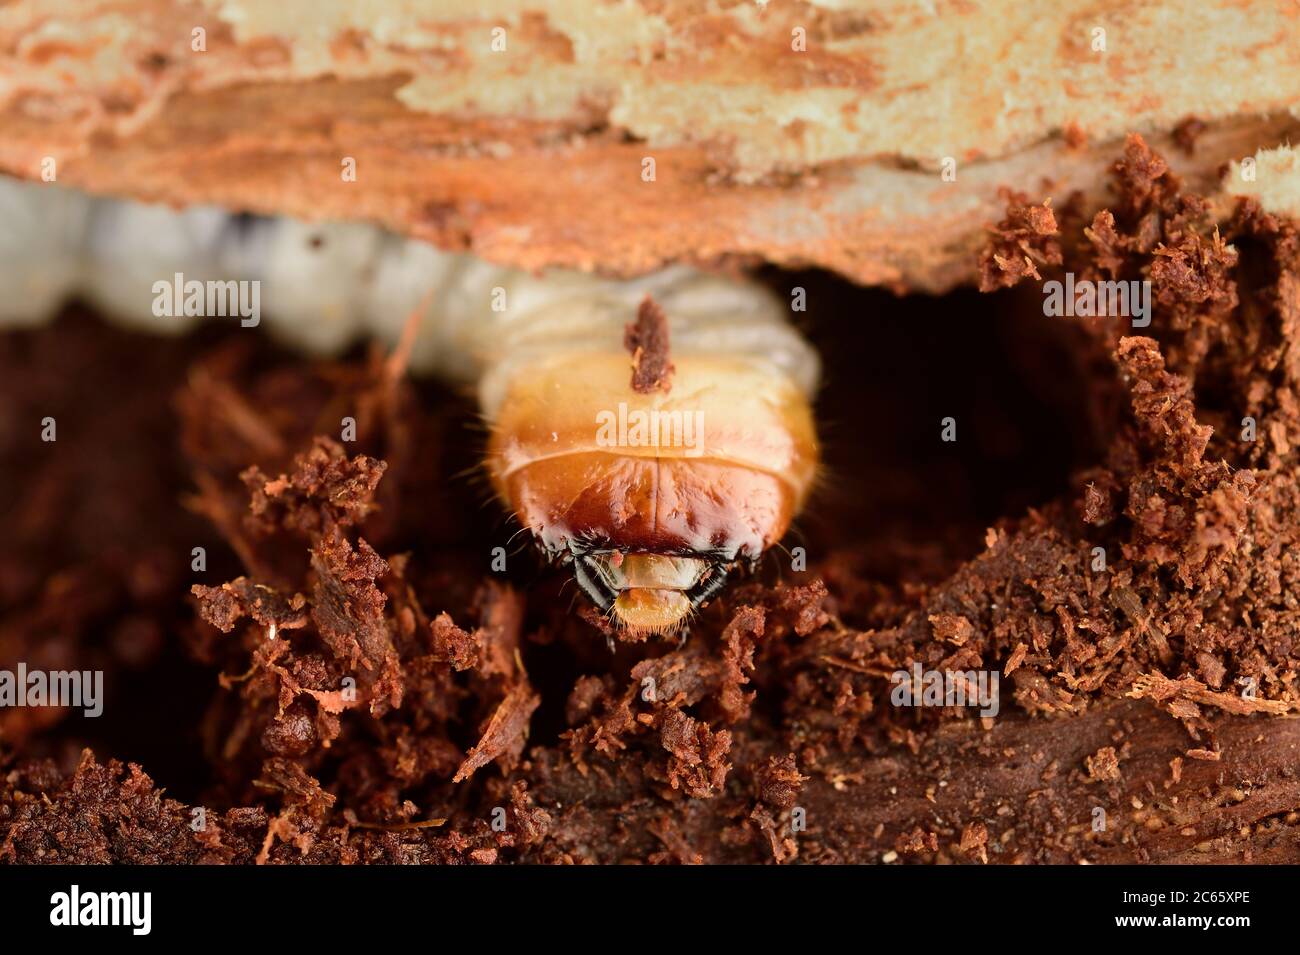 Les larves du Pinchbuck, du Longhorn Beetle (Rhagium sycophanta) mangent des allées larges et plates sous l'écorce des souches de chêne, des troncs de fellen ou des chênes endommagés, Kiel, Allemagne Banque D'Images